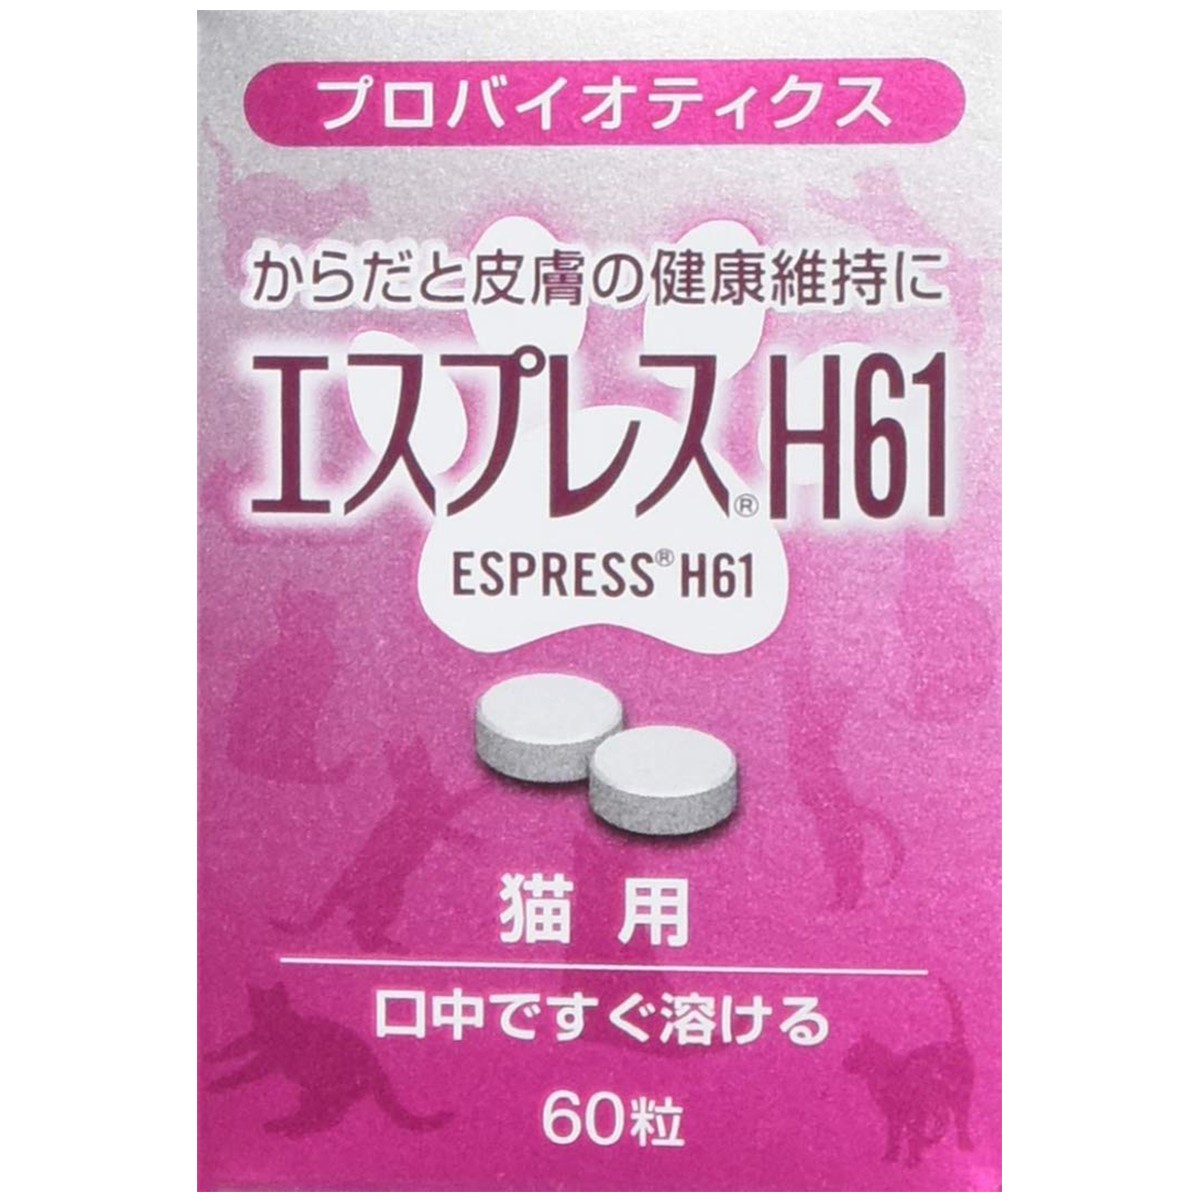 東亜薬品工業 エスプレスH61 猫用 60粒×1個の商品画像